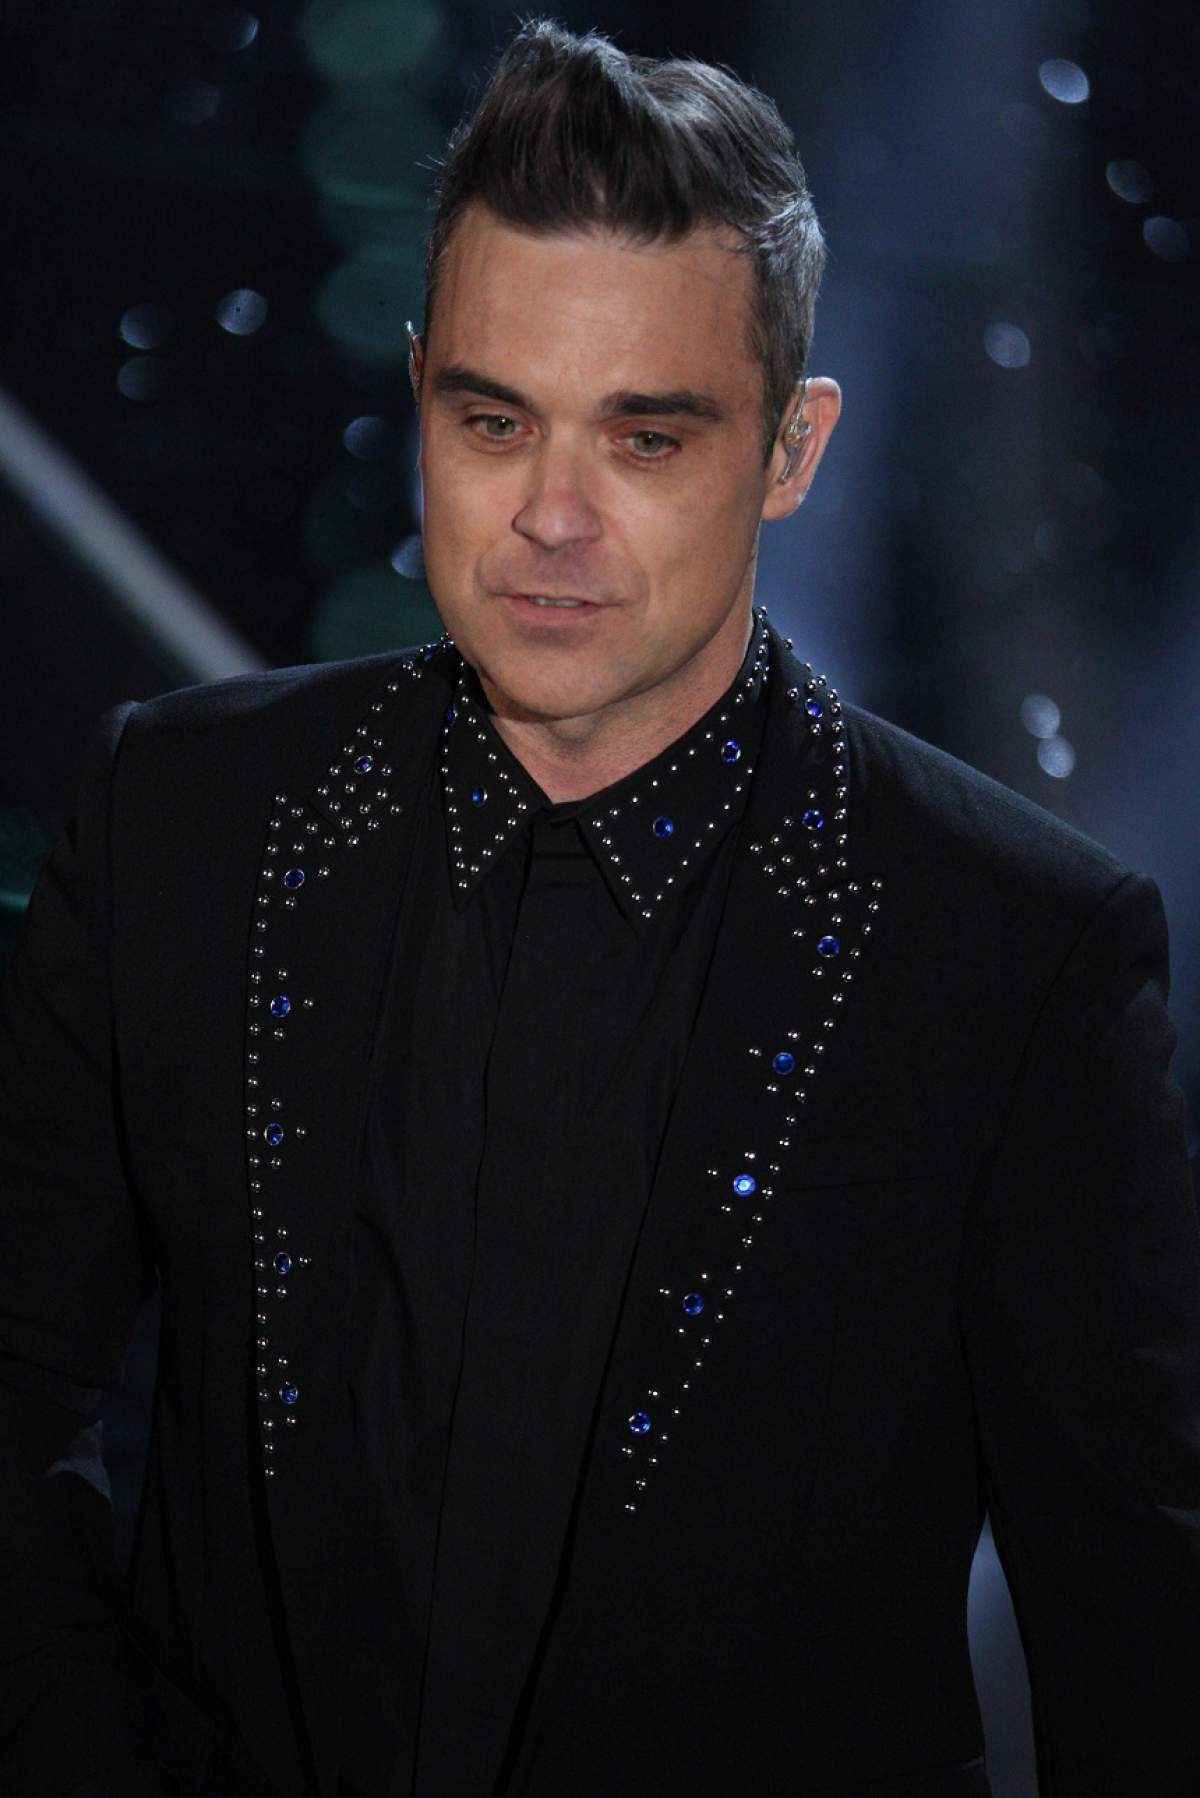 FOTO / Robbie Williams a comis-o! Drogurile i-au schimbat viaţa radical, iar modul în care şi-a cunoscut soţia este uluitor